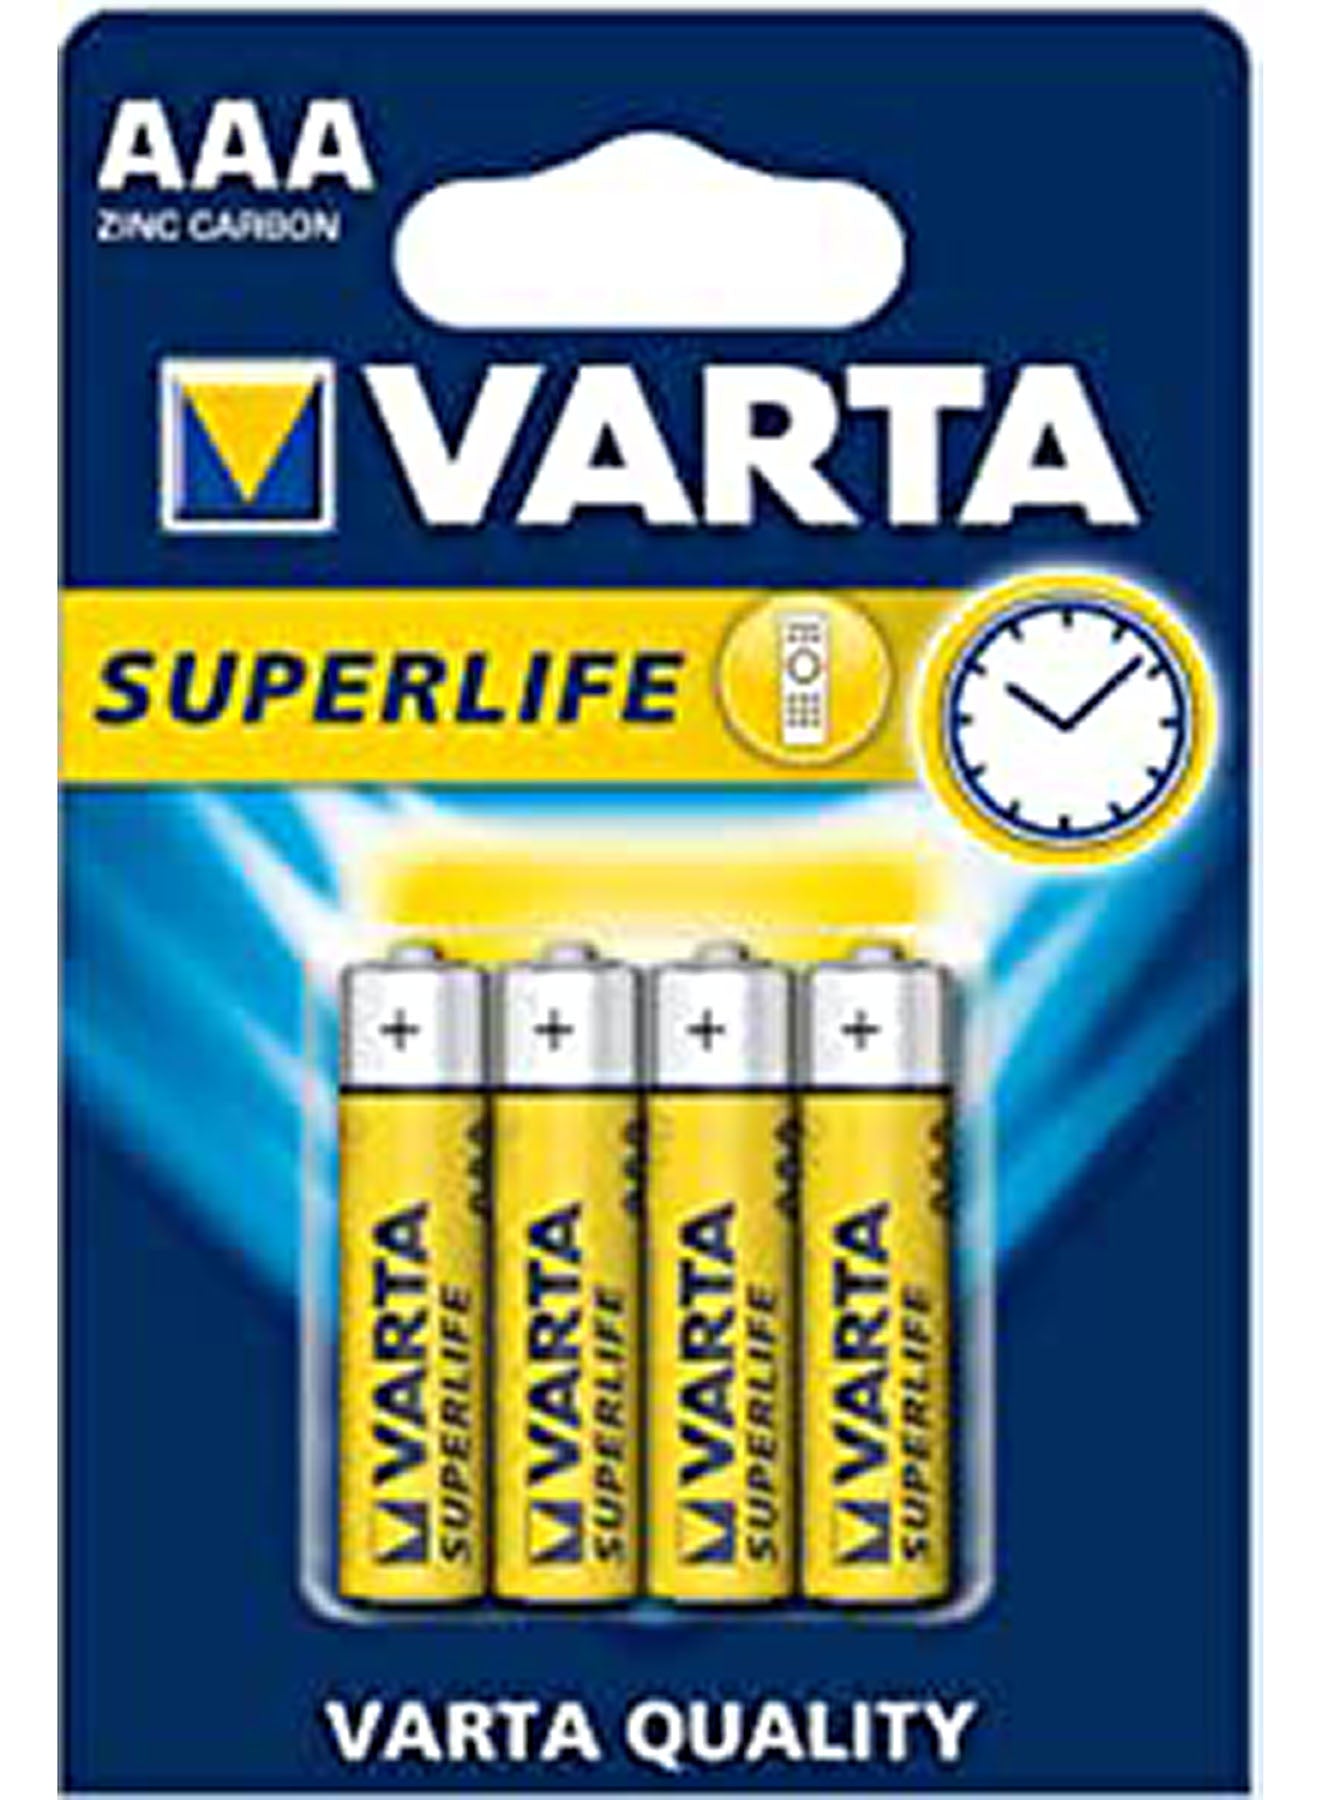 Varta Superlife AAA Battery 4 Units